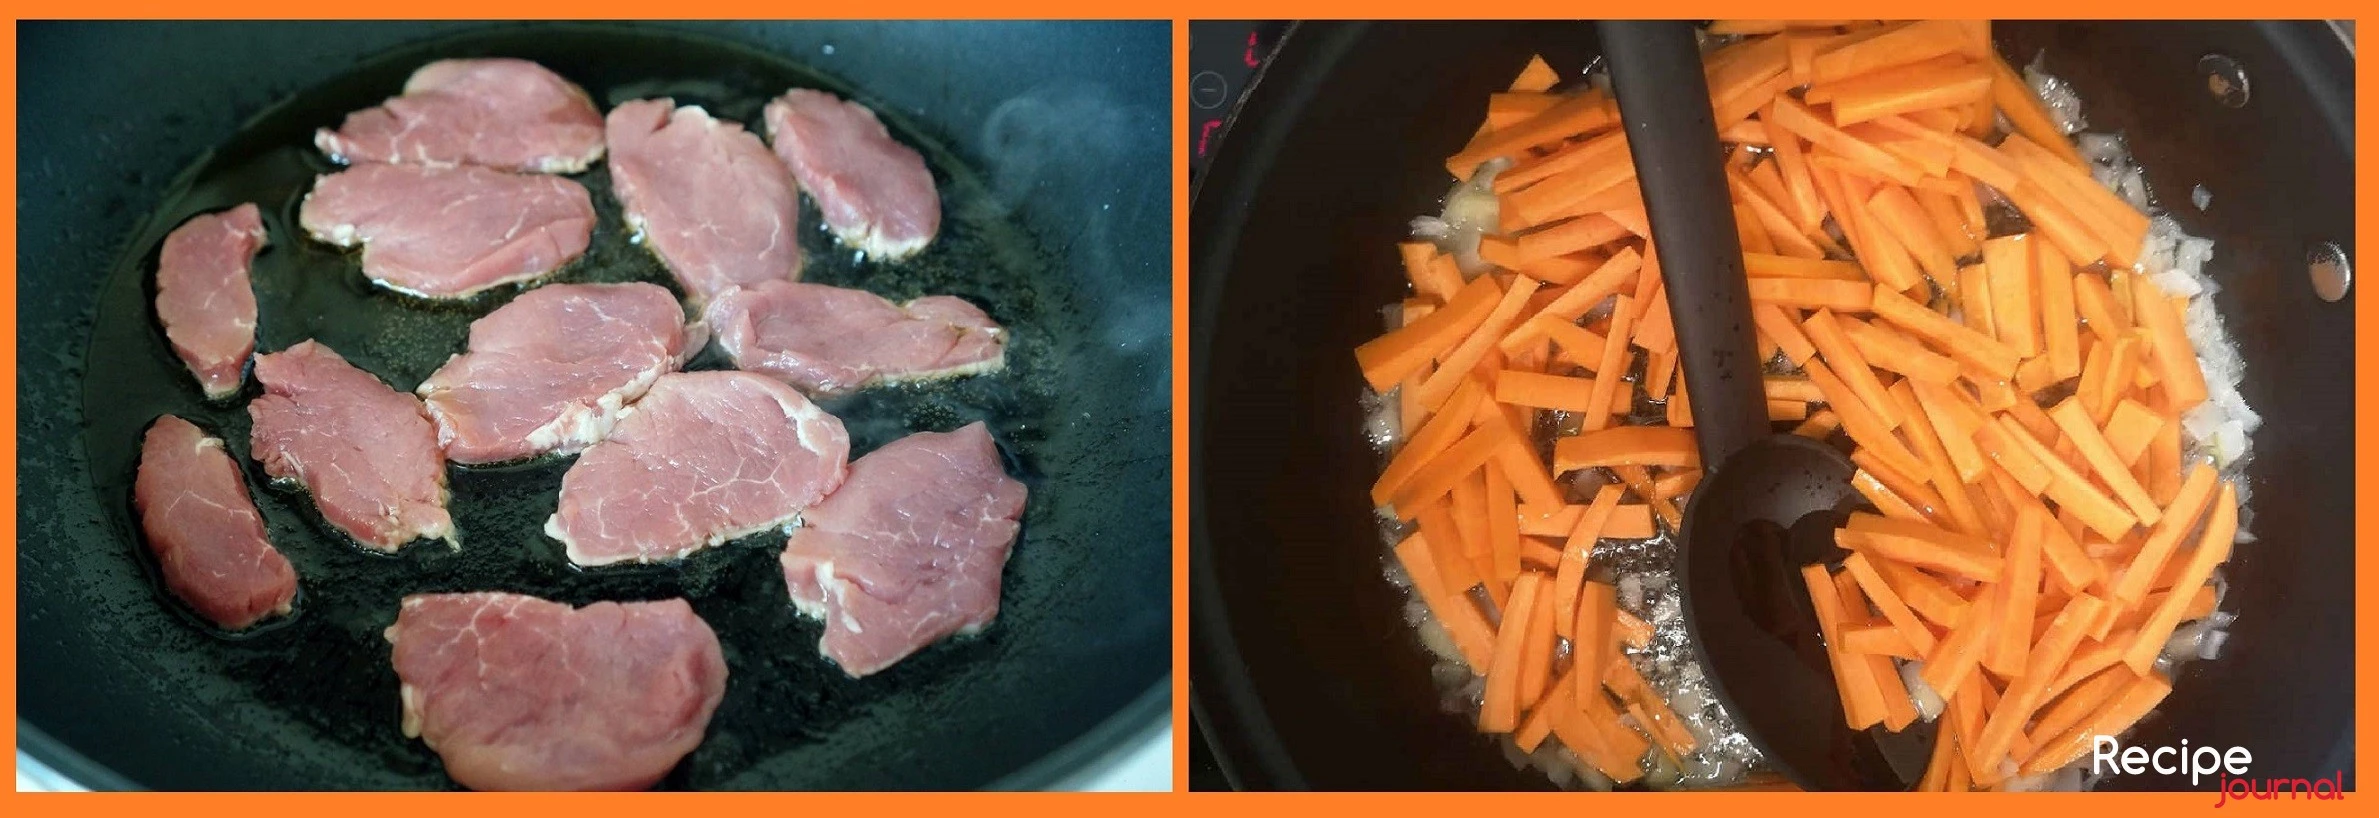 Свинину режем небольшими кусочками, отбиваем и обжариваем на сковороде в подсолнечном масле до образования корочки. Затем мелко режем лук и морковь соломкой, обжариваем до готовности в растительном масле.